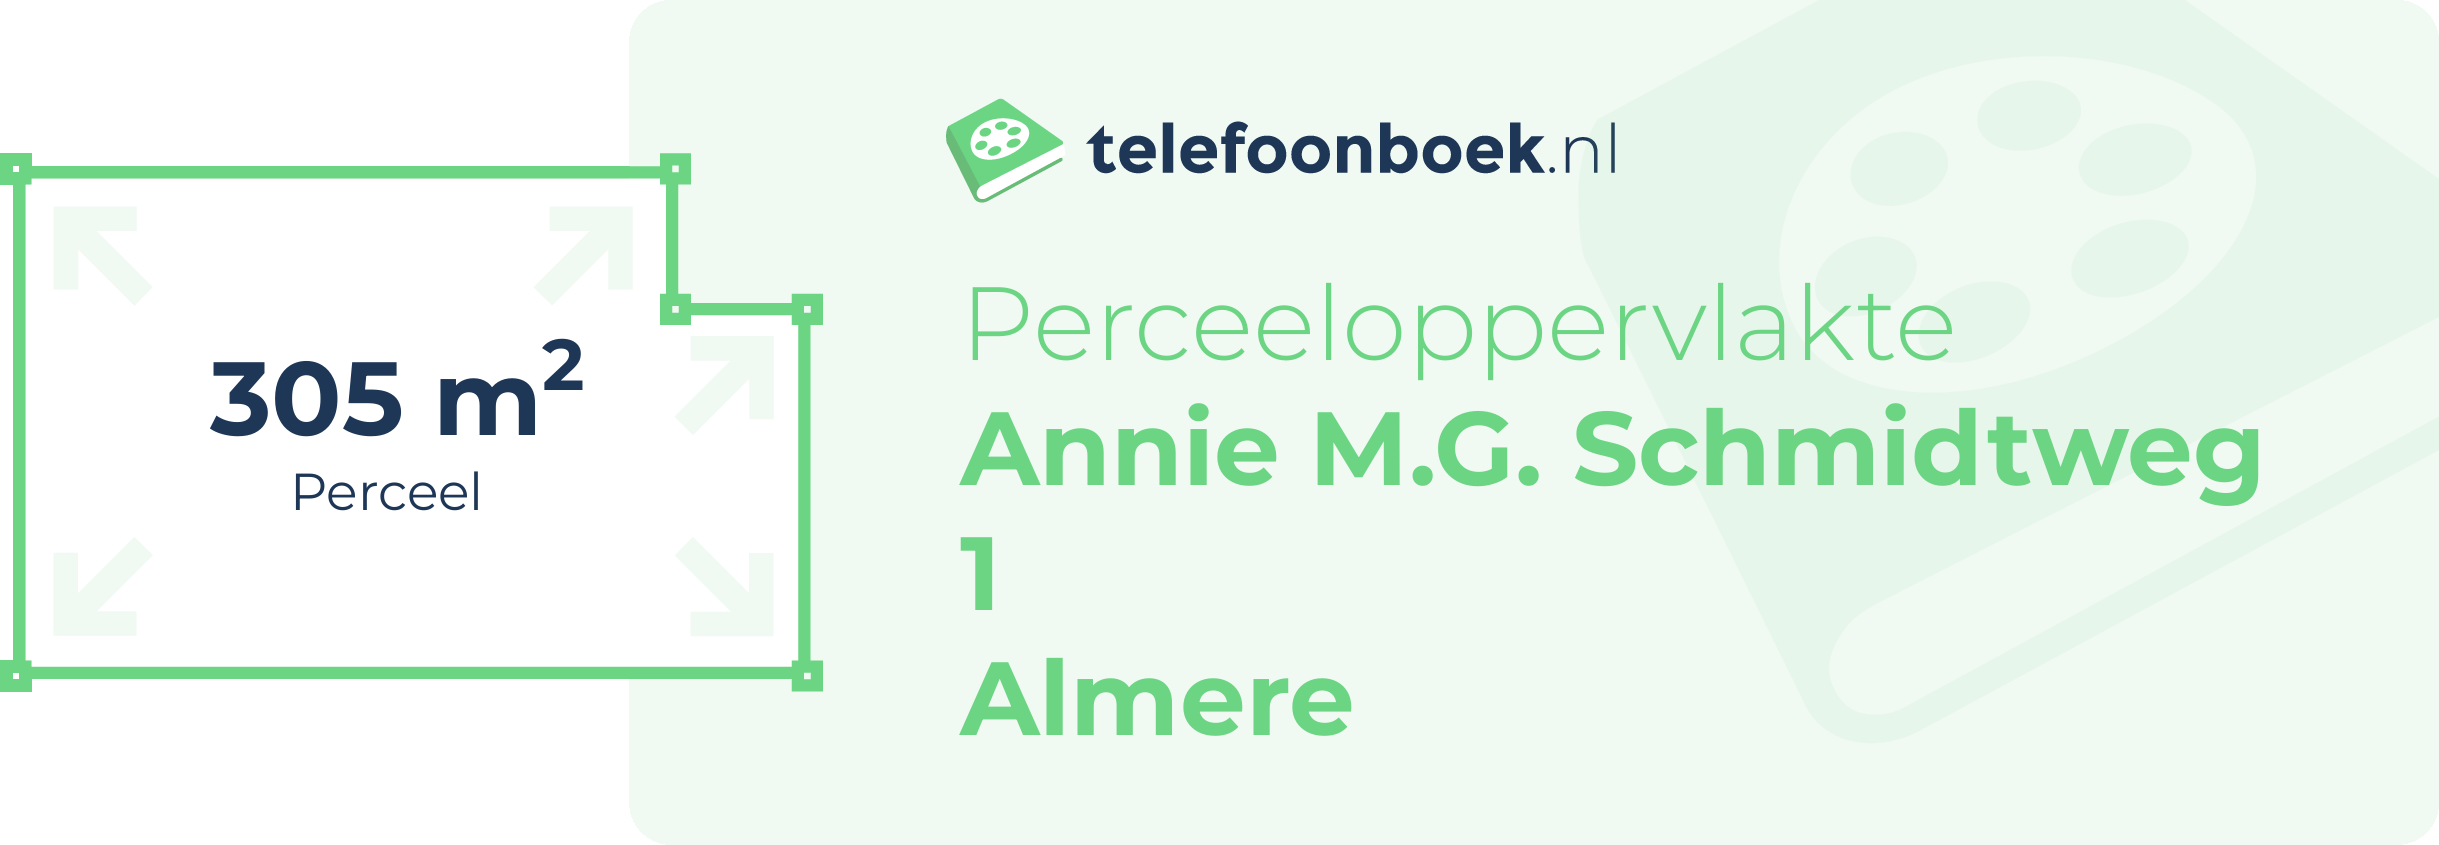 Perceeloppervlakte Annie M.G. Schmidtweg 1 Almere